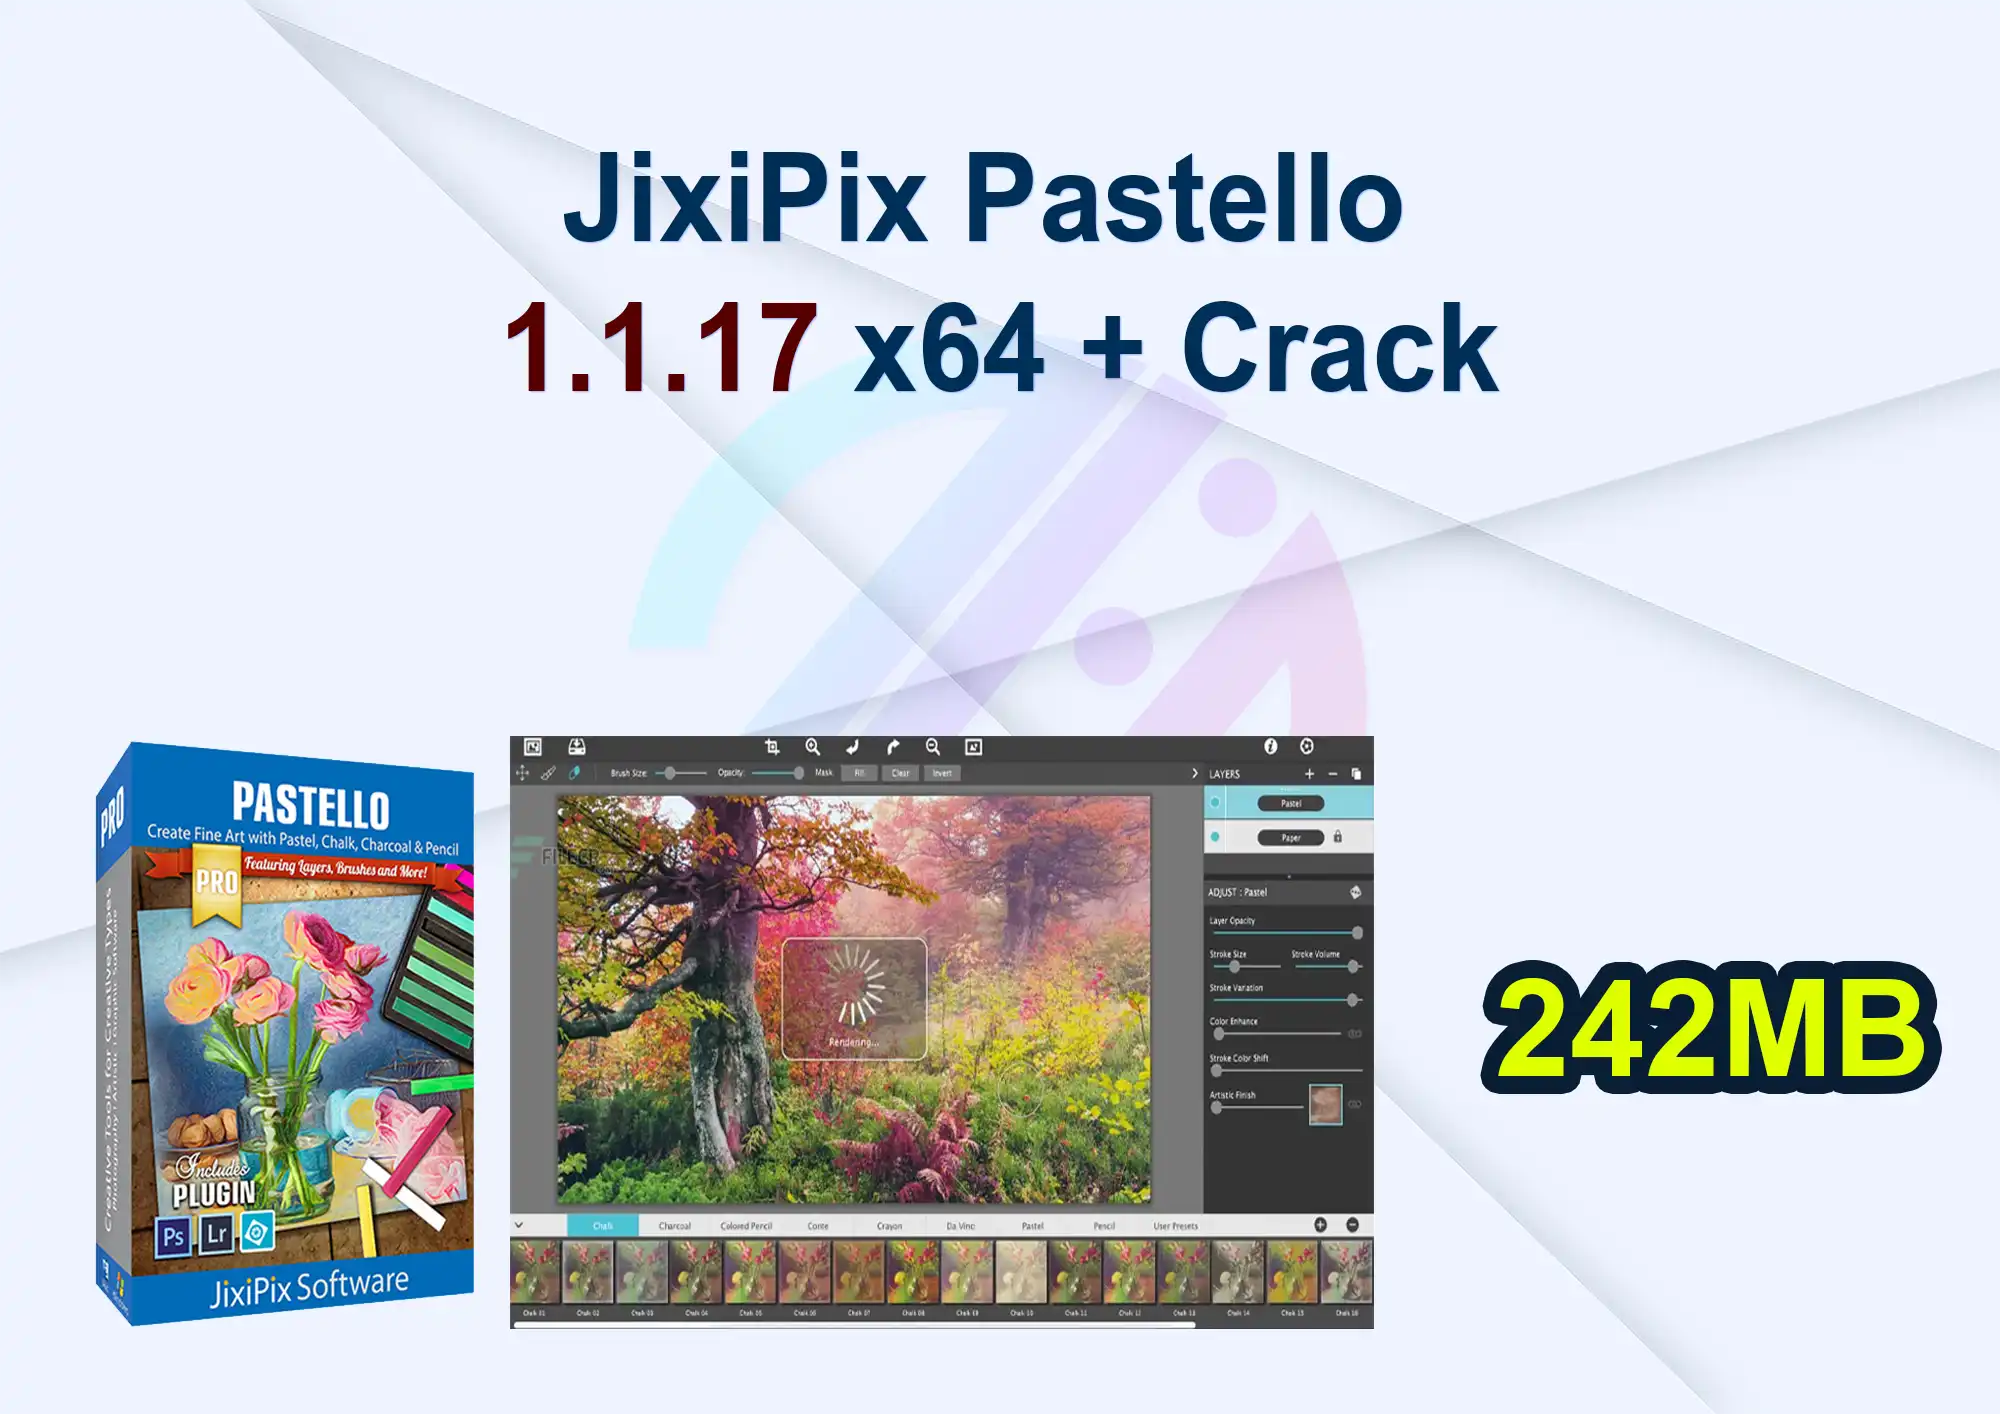 JixiPix Pastello 1.1.17 x64 + Crack